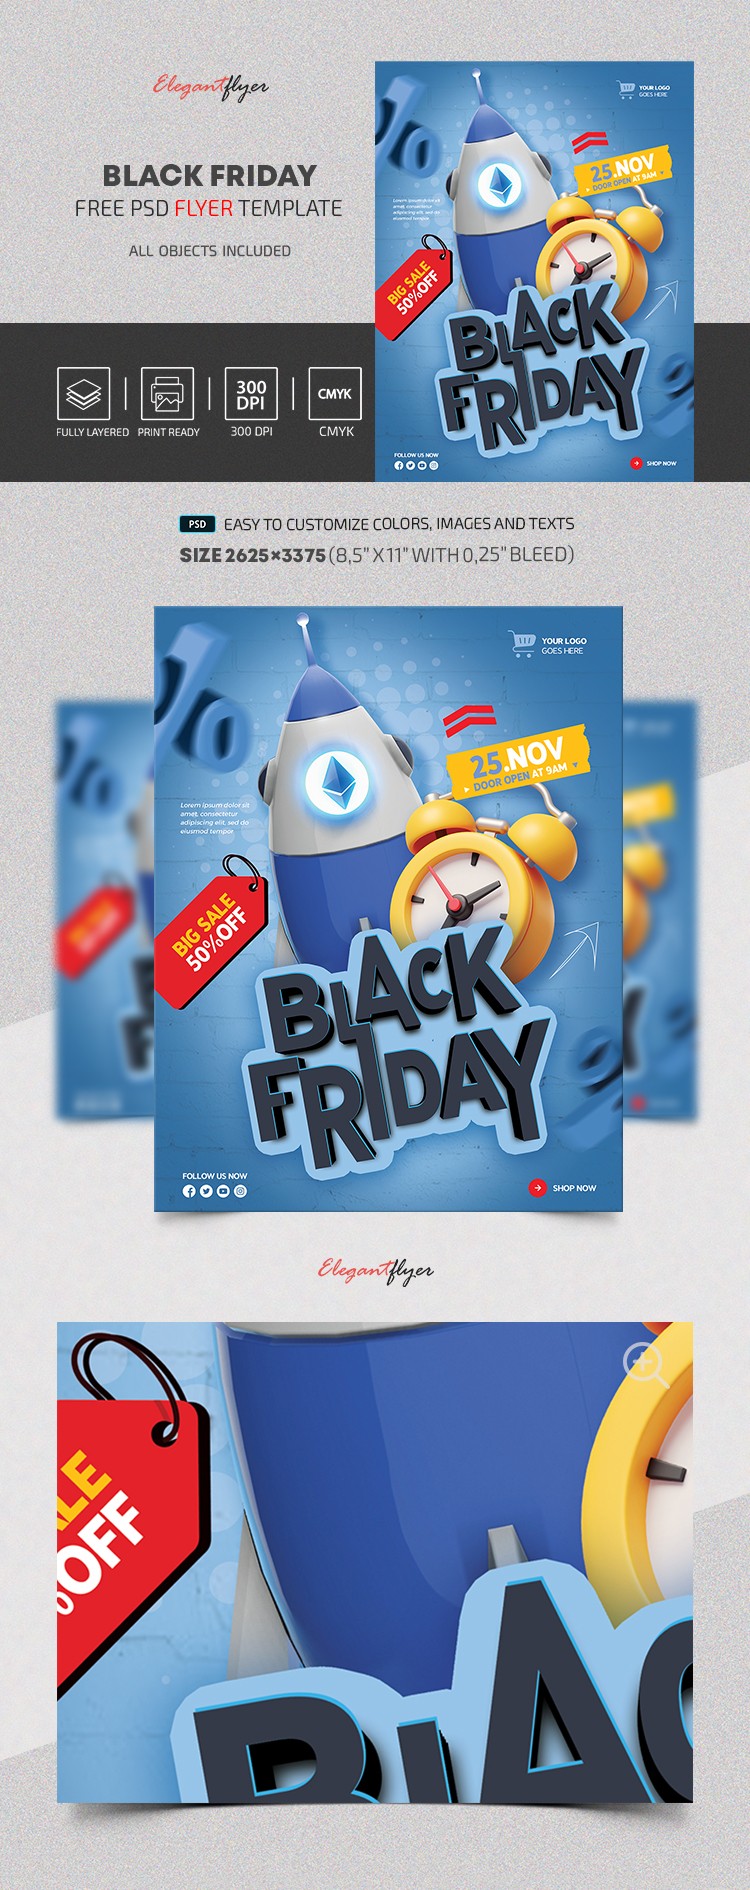 Black Friday Flyer by ElegantFlyer